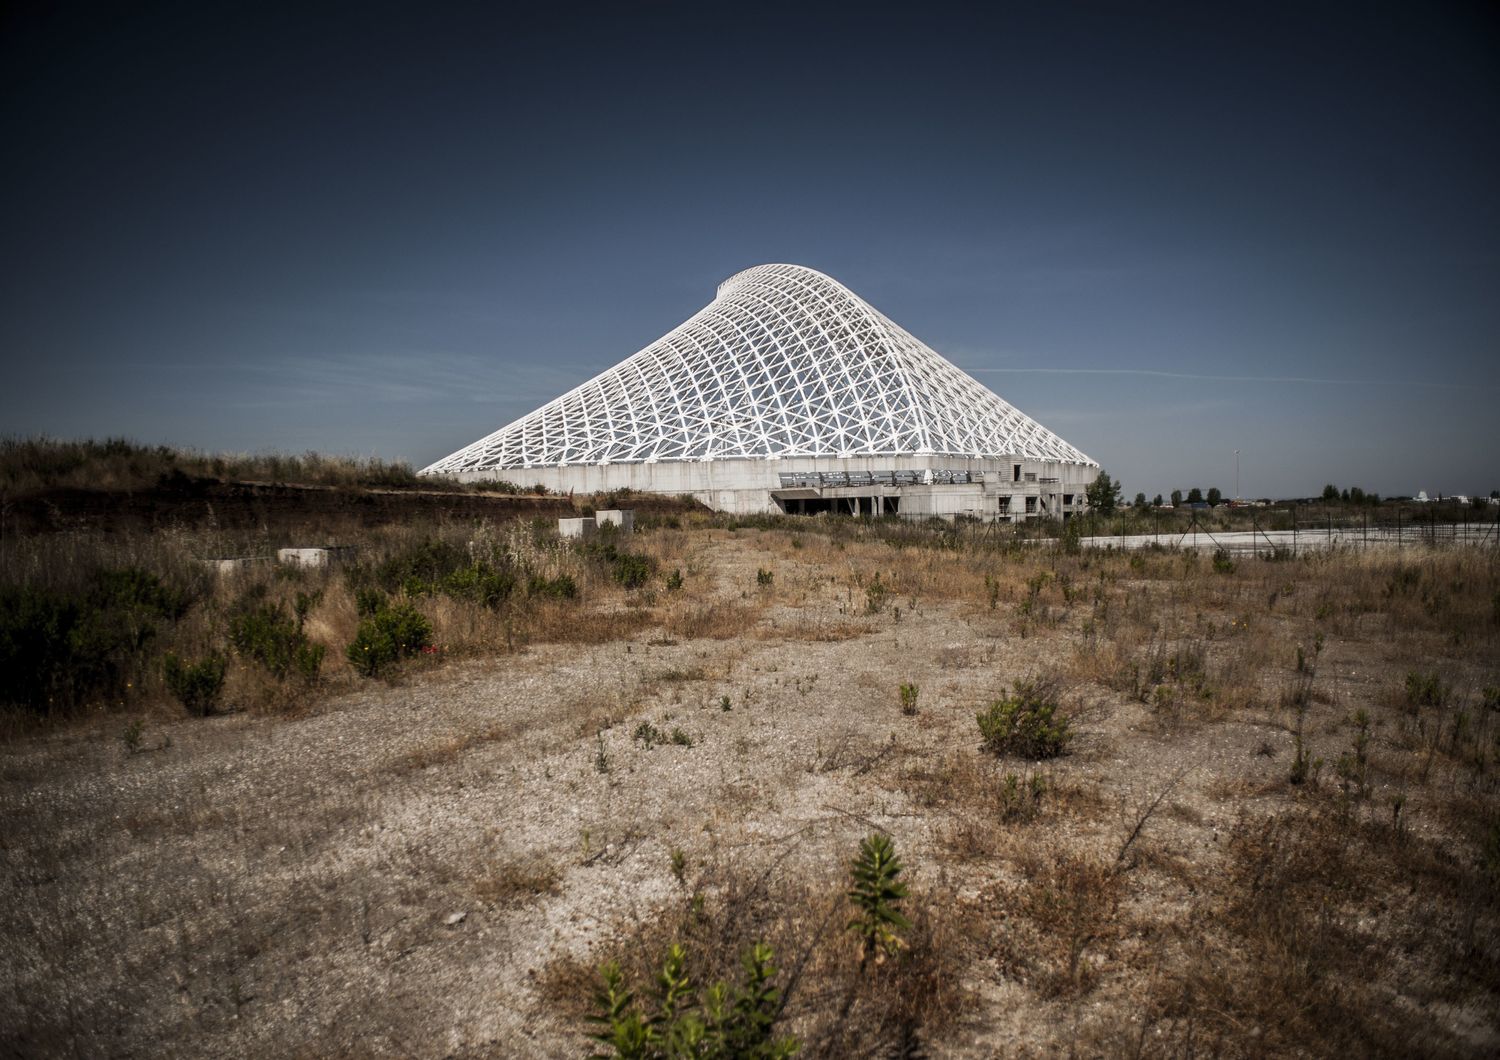 La zona della vela di Calatrava dove dovrebbe sorgere Expo 2030